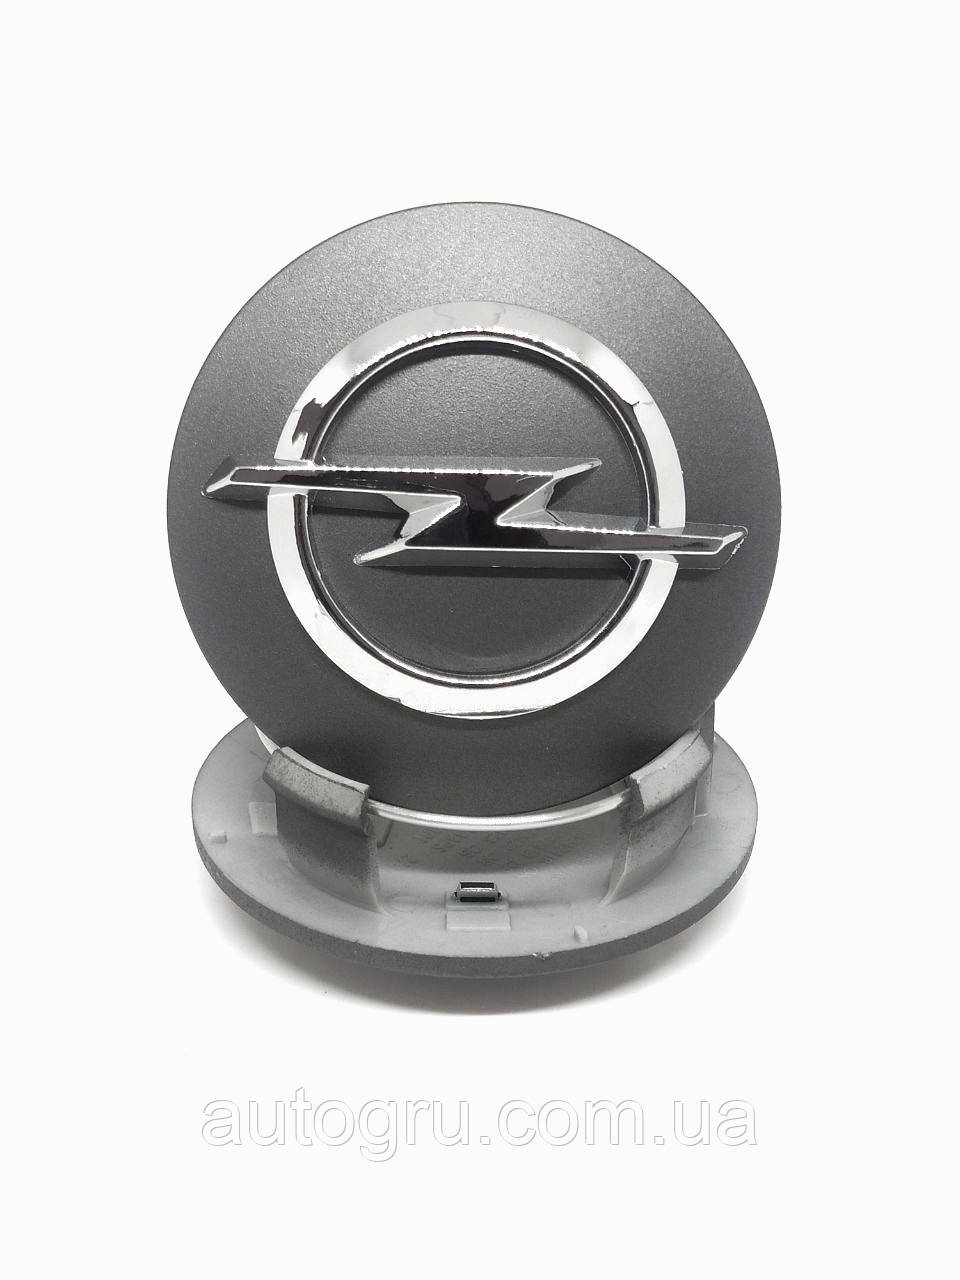 Ковпачок Opel 13276164 заглушка на литі диски Опель 1006275